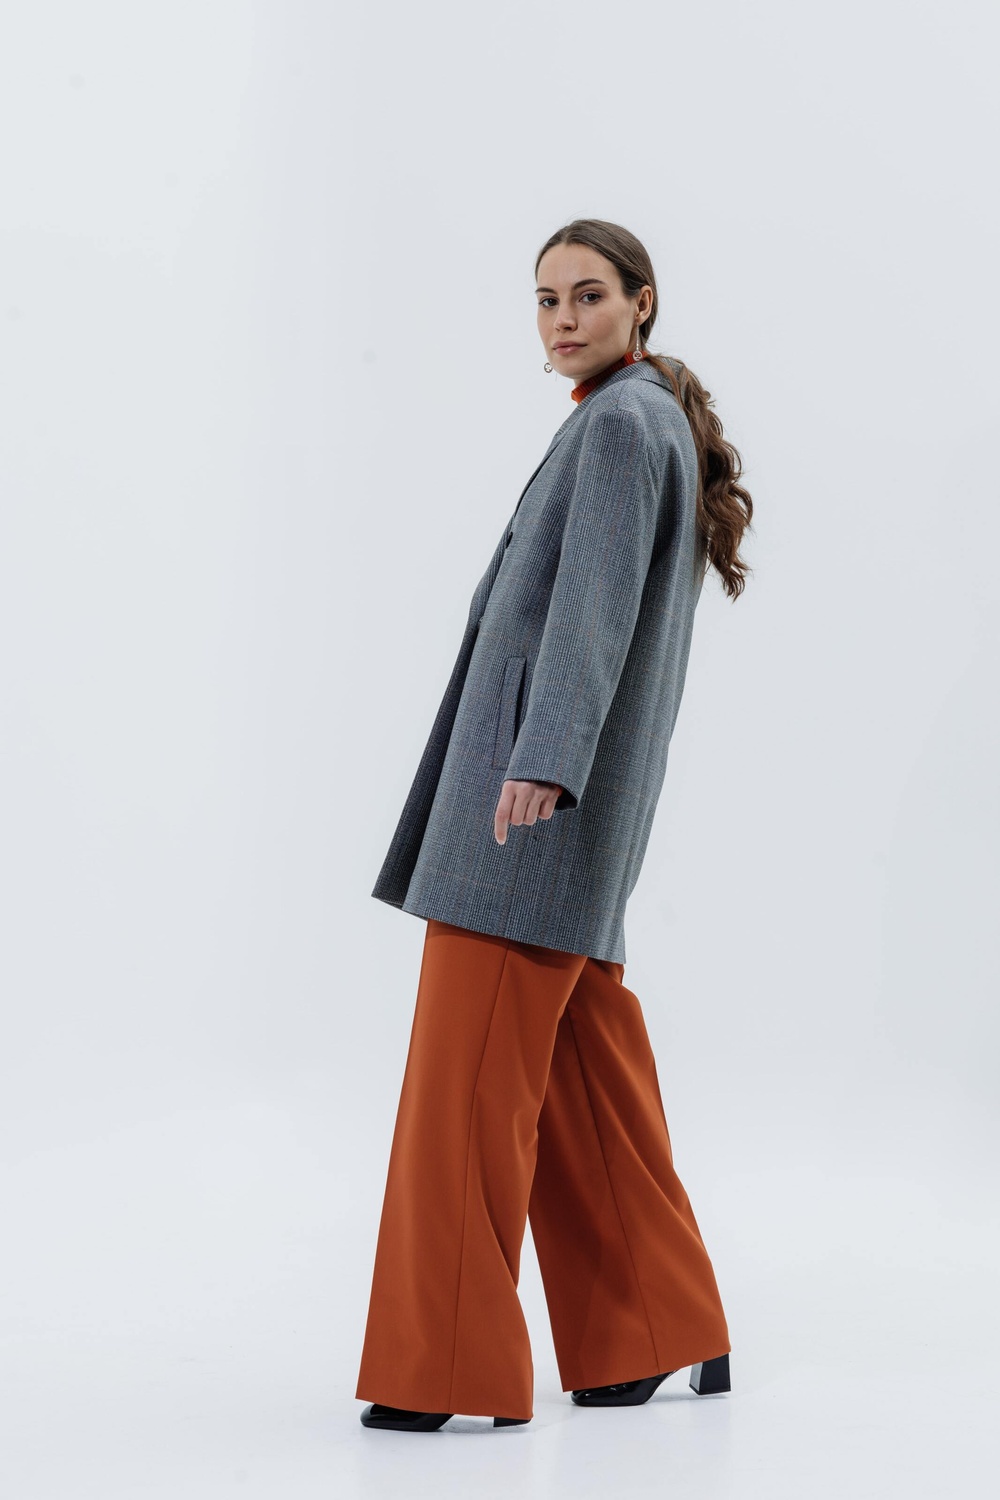 Wool Coat-jacket grey-orange check